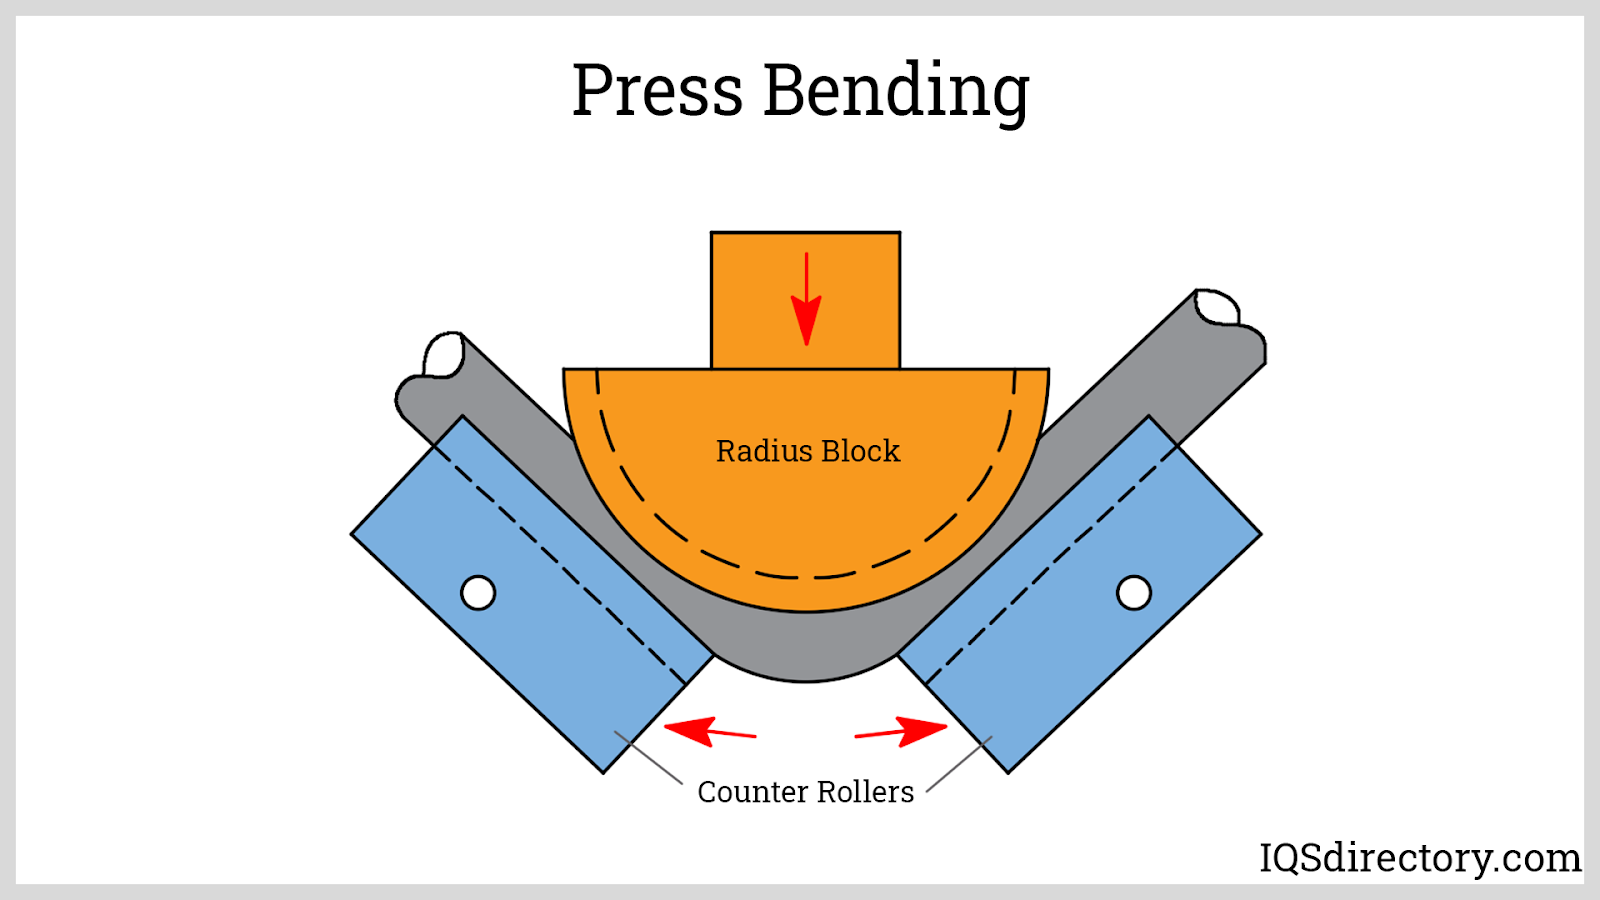 Press Bending